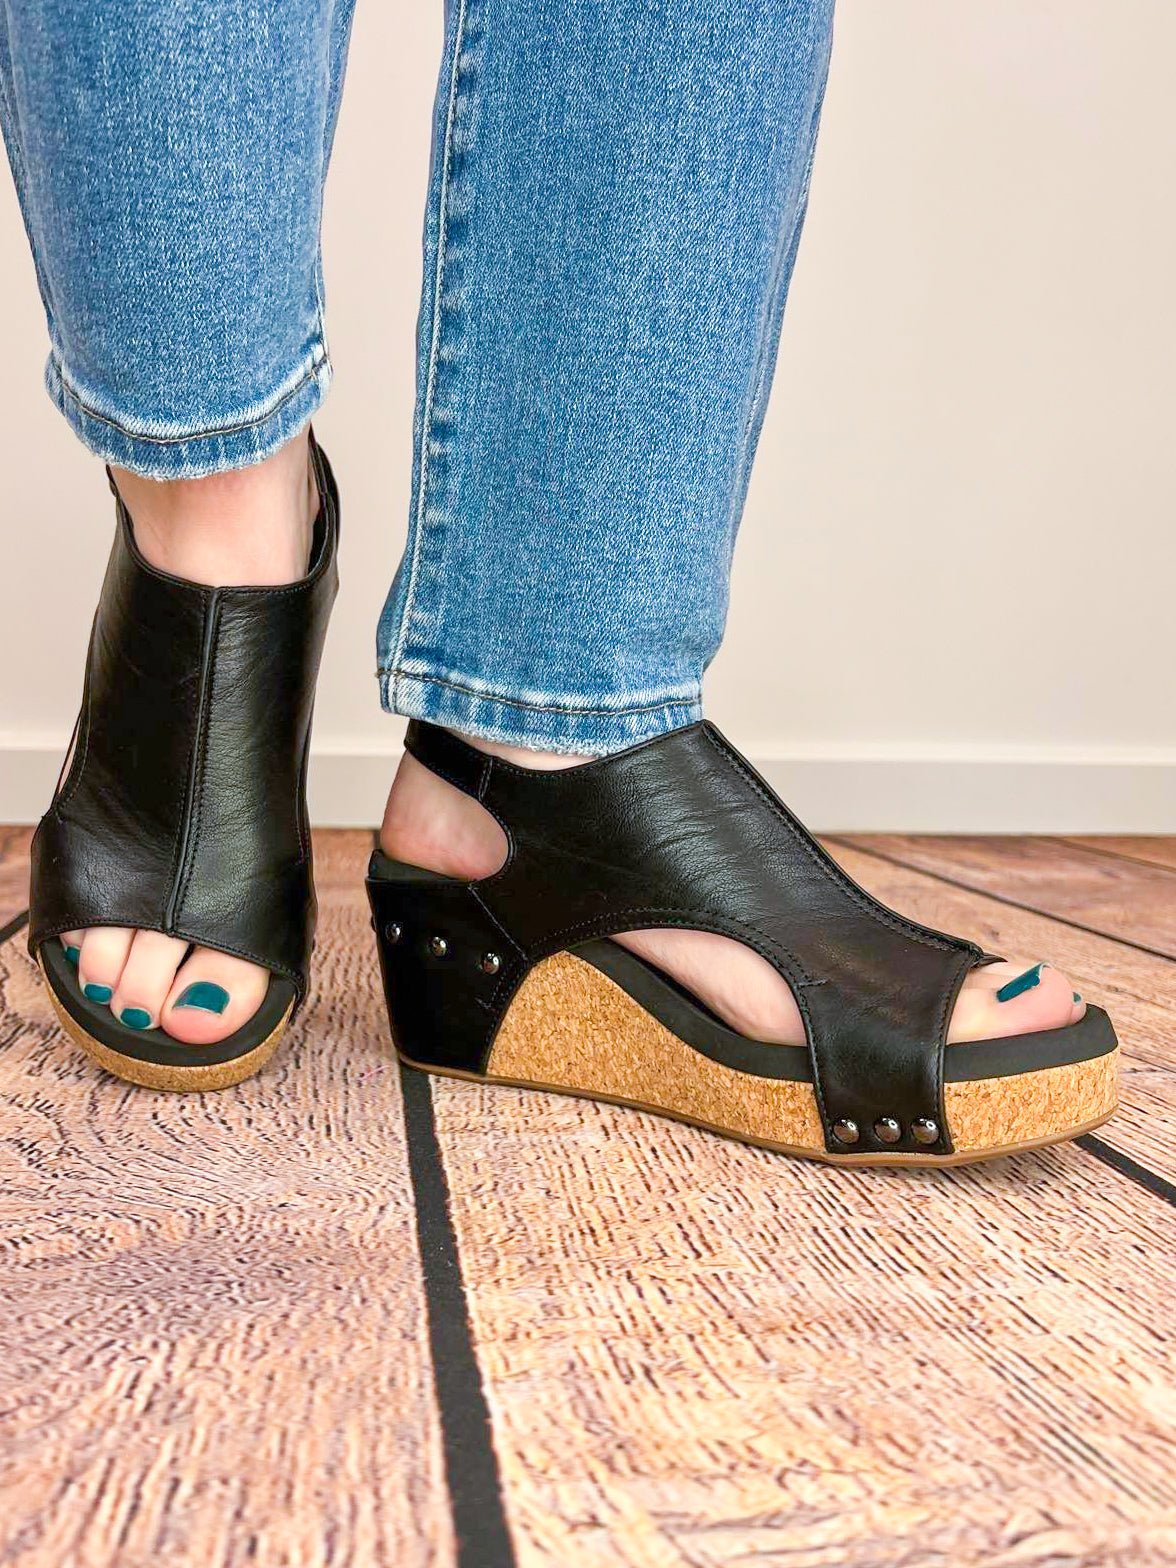 Carley Wedge Sandal - Black Smooth - Lavender Hills BeautyCorkys Footwear30 - 5316 - BKSM - 6